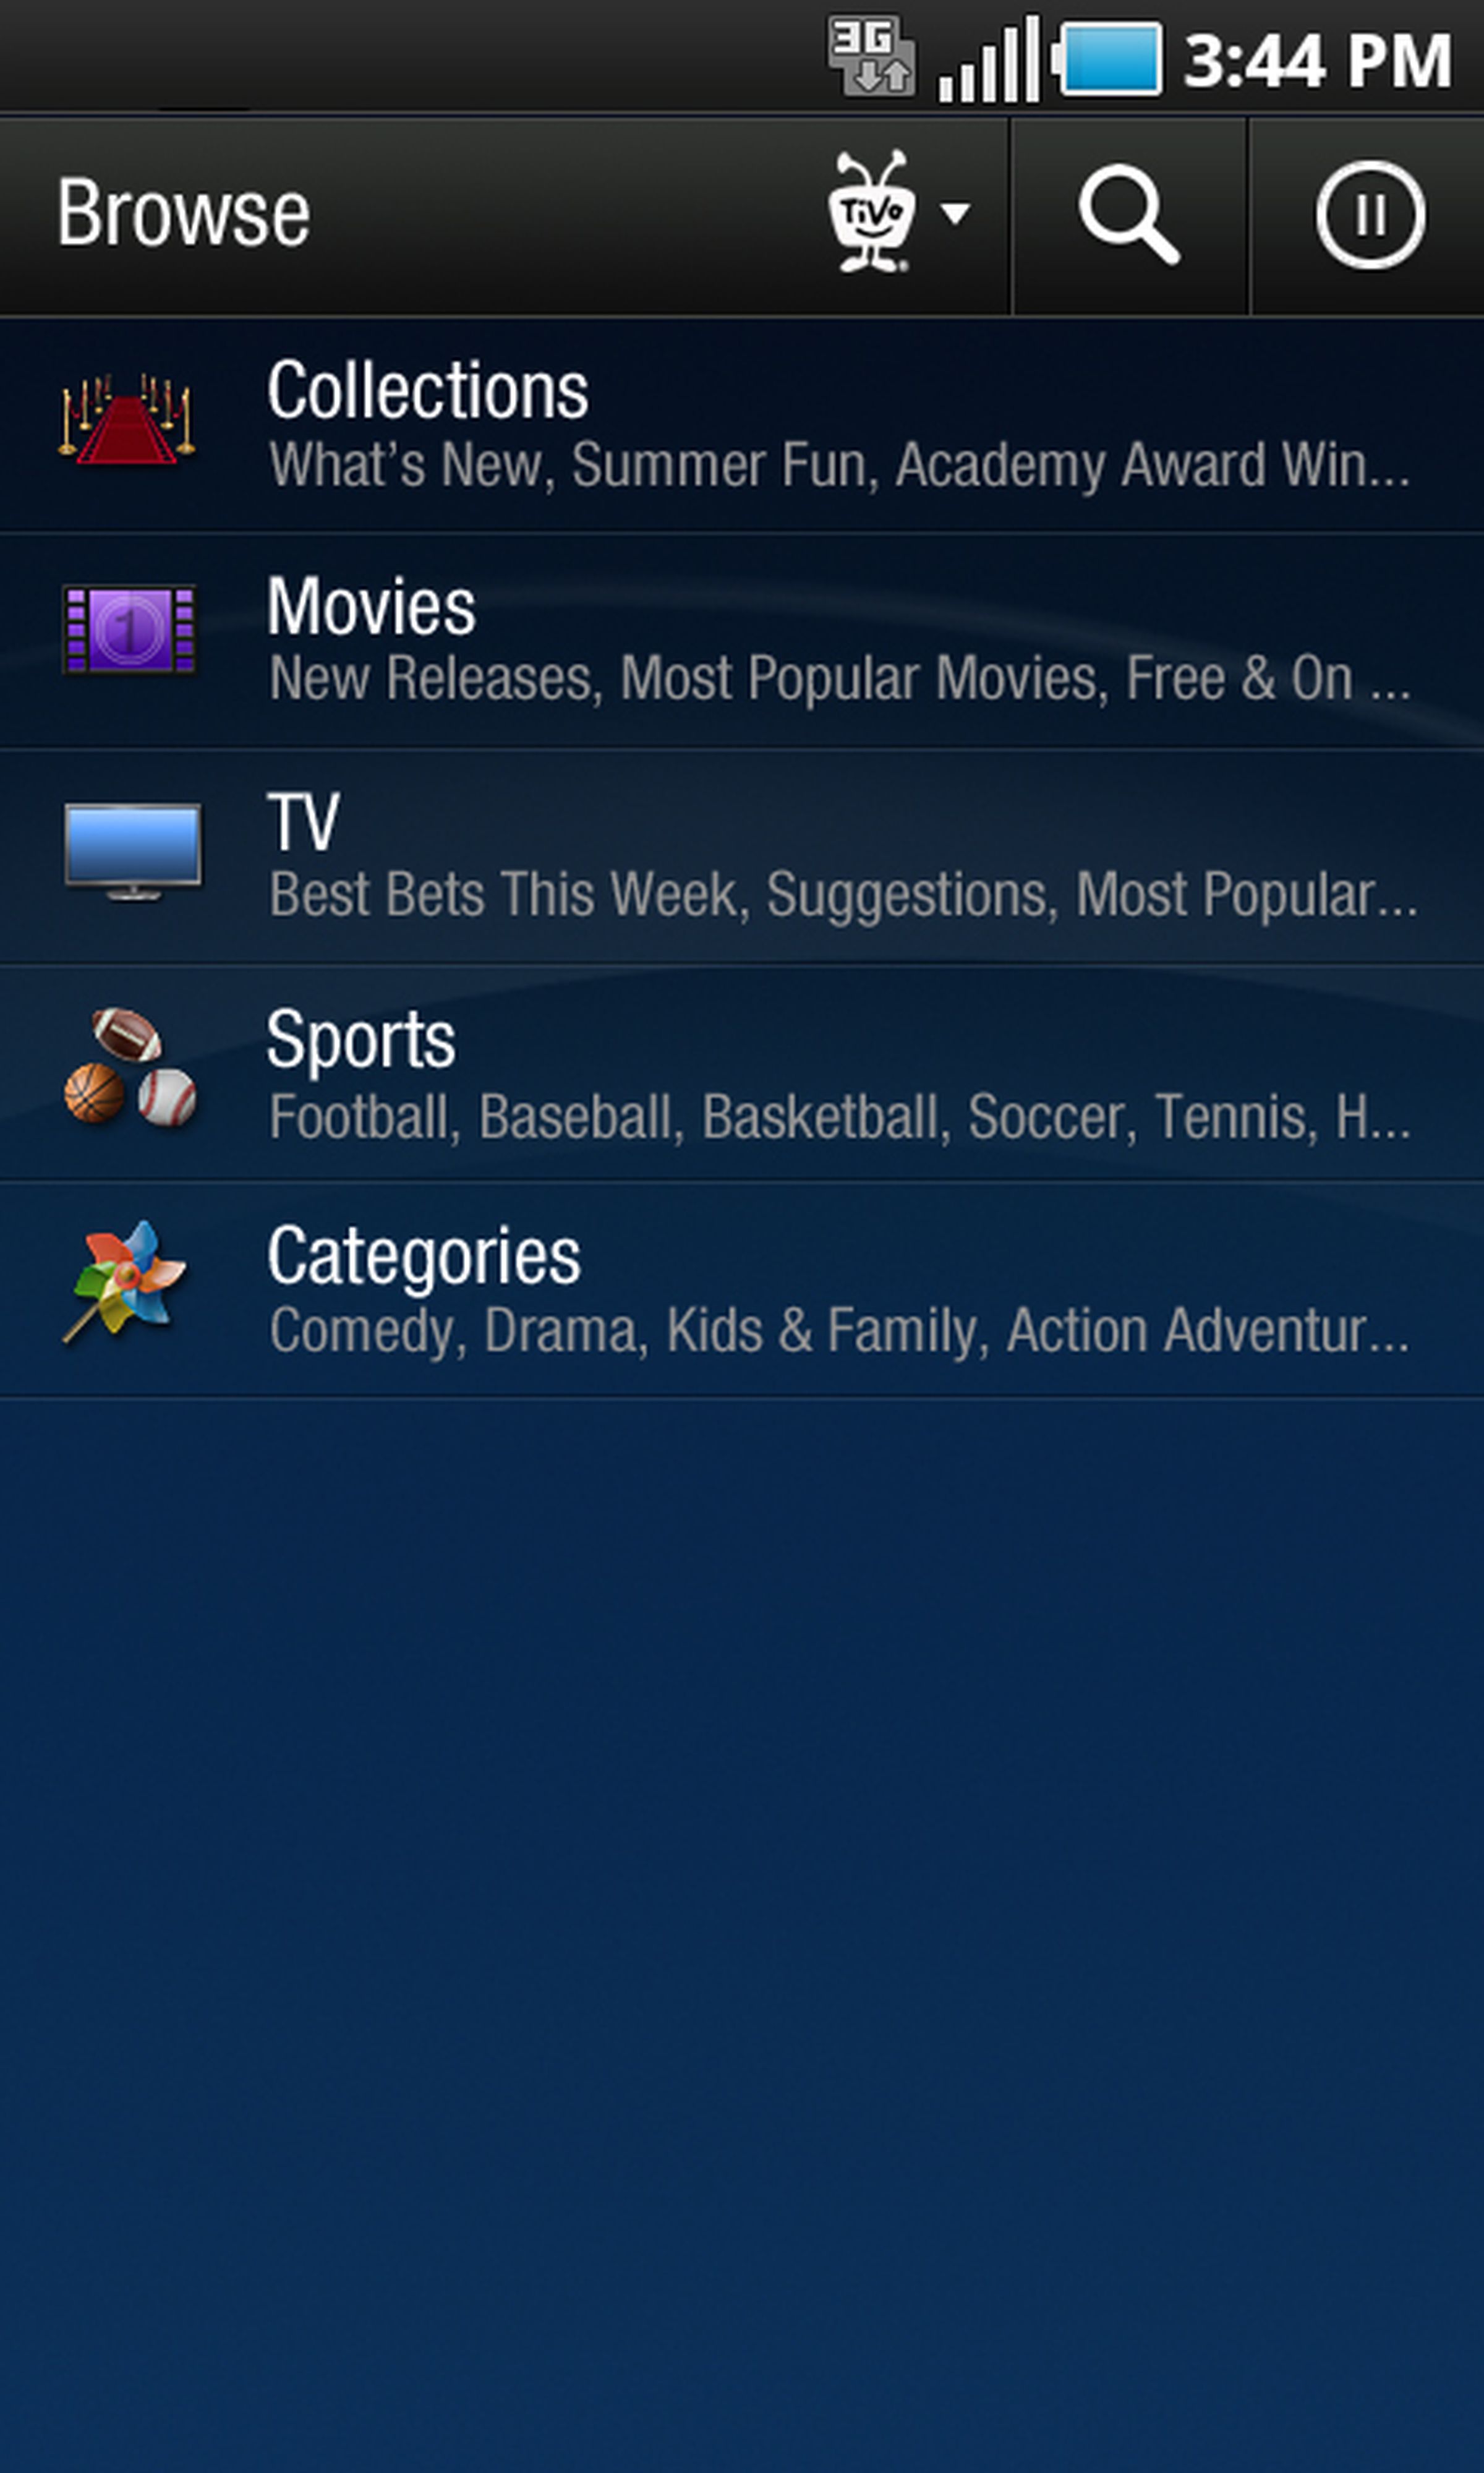 TiVo Android app screenshots